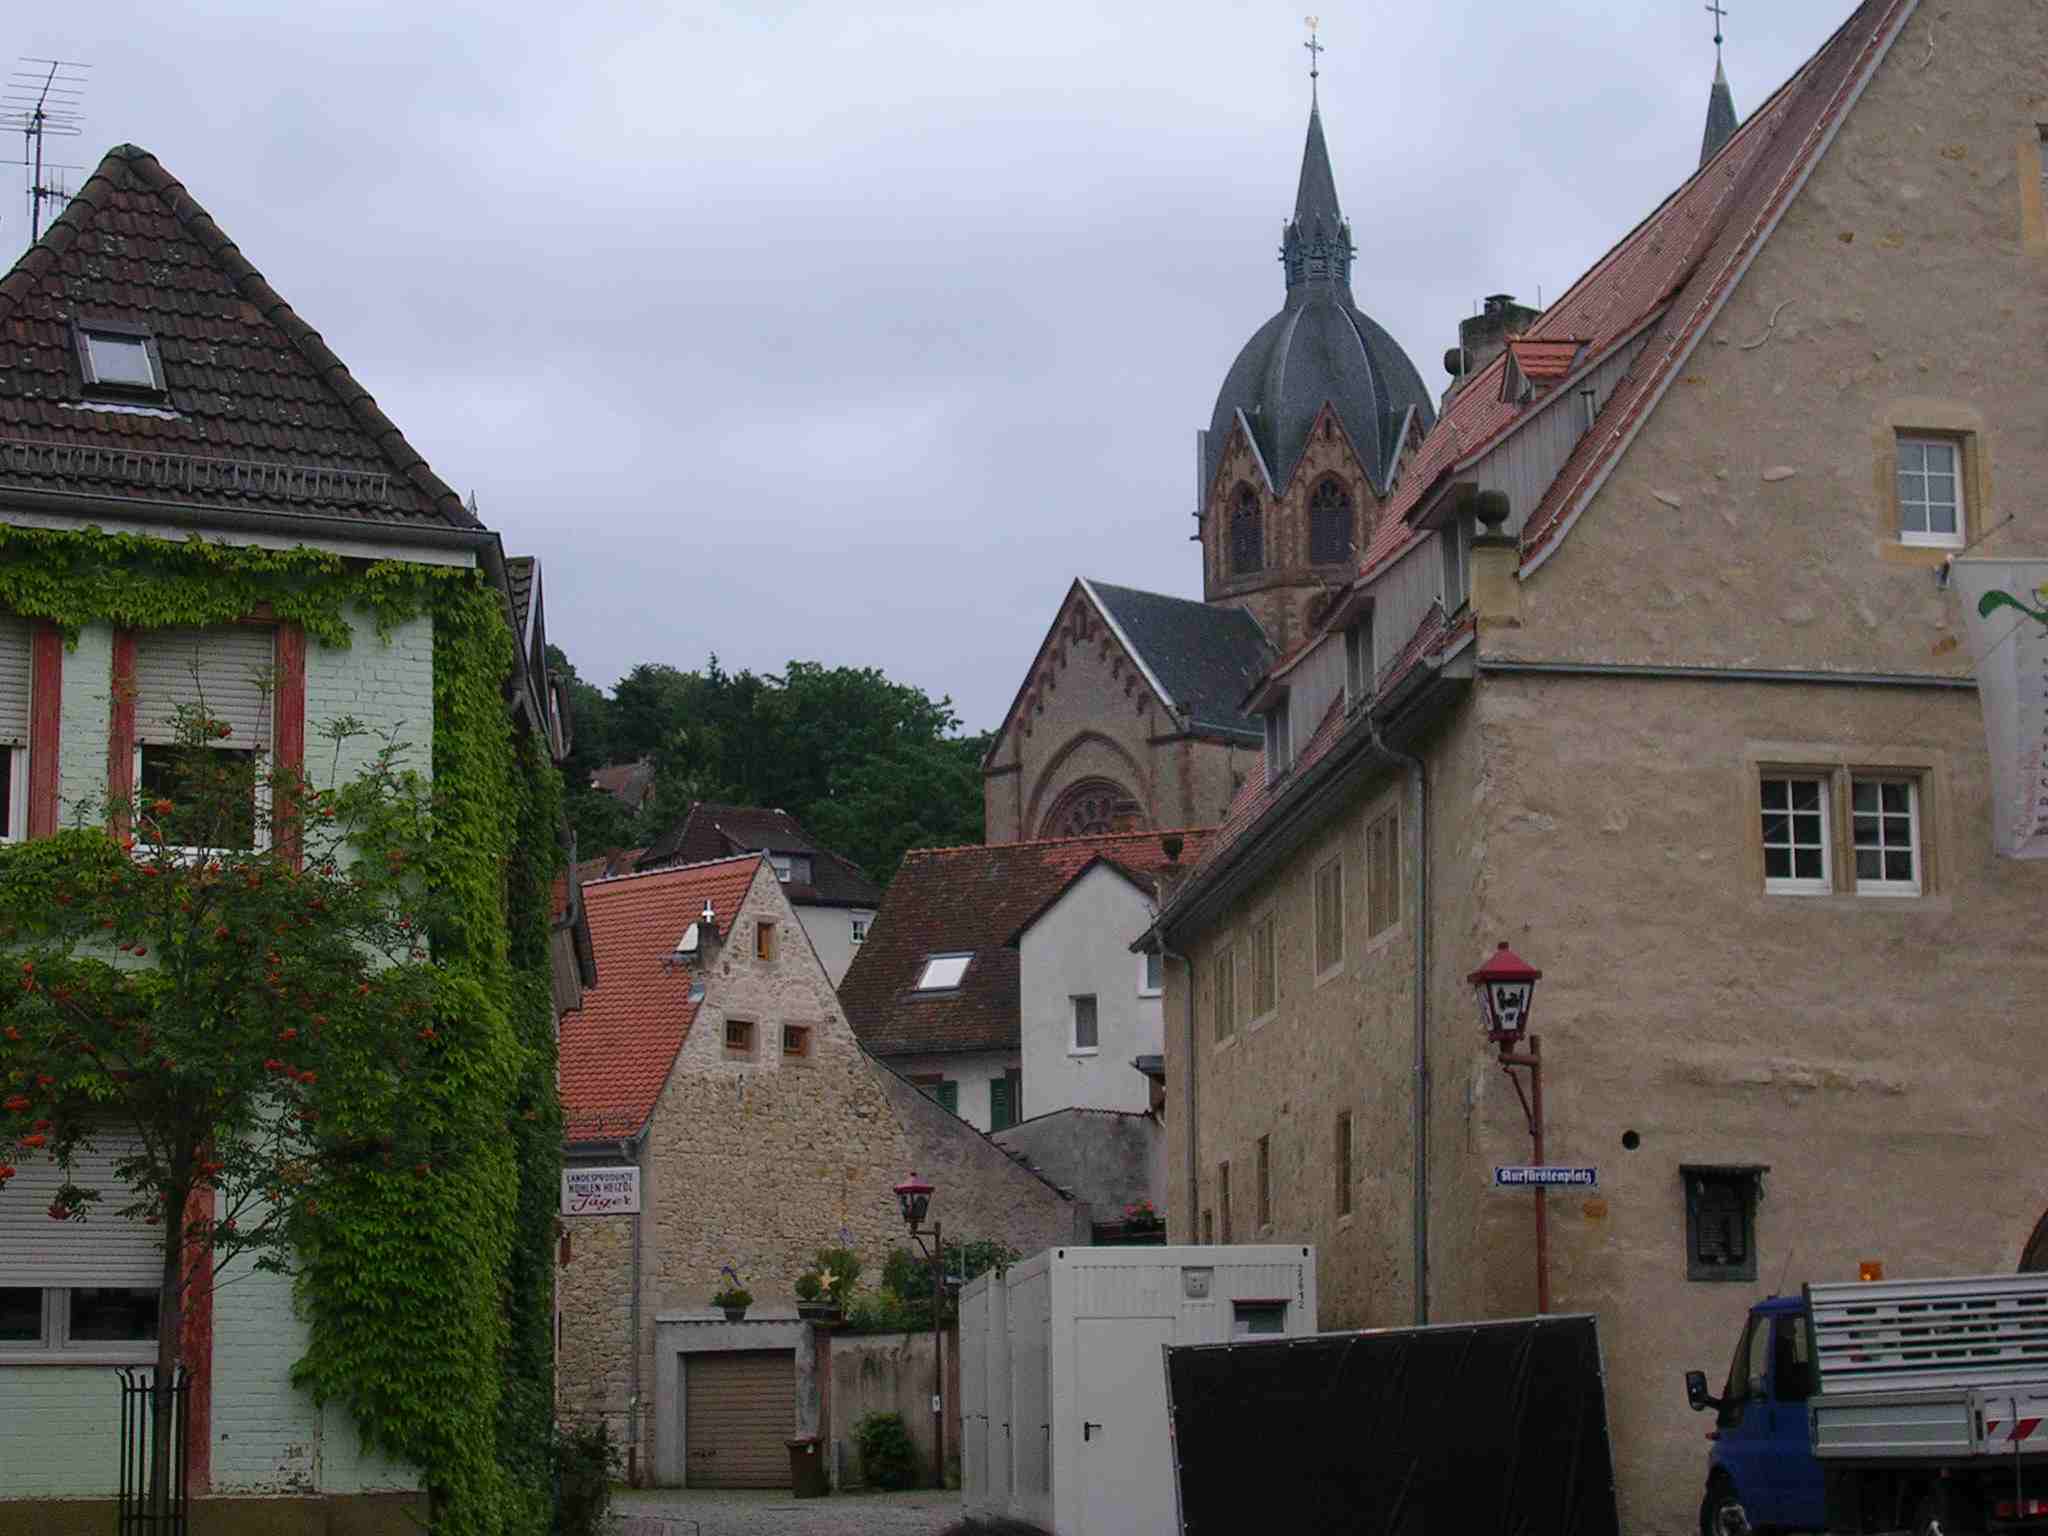 City of Heppenheim